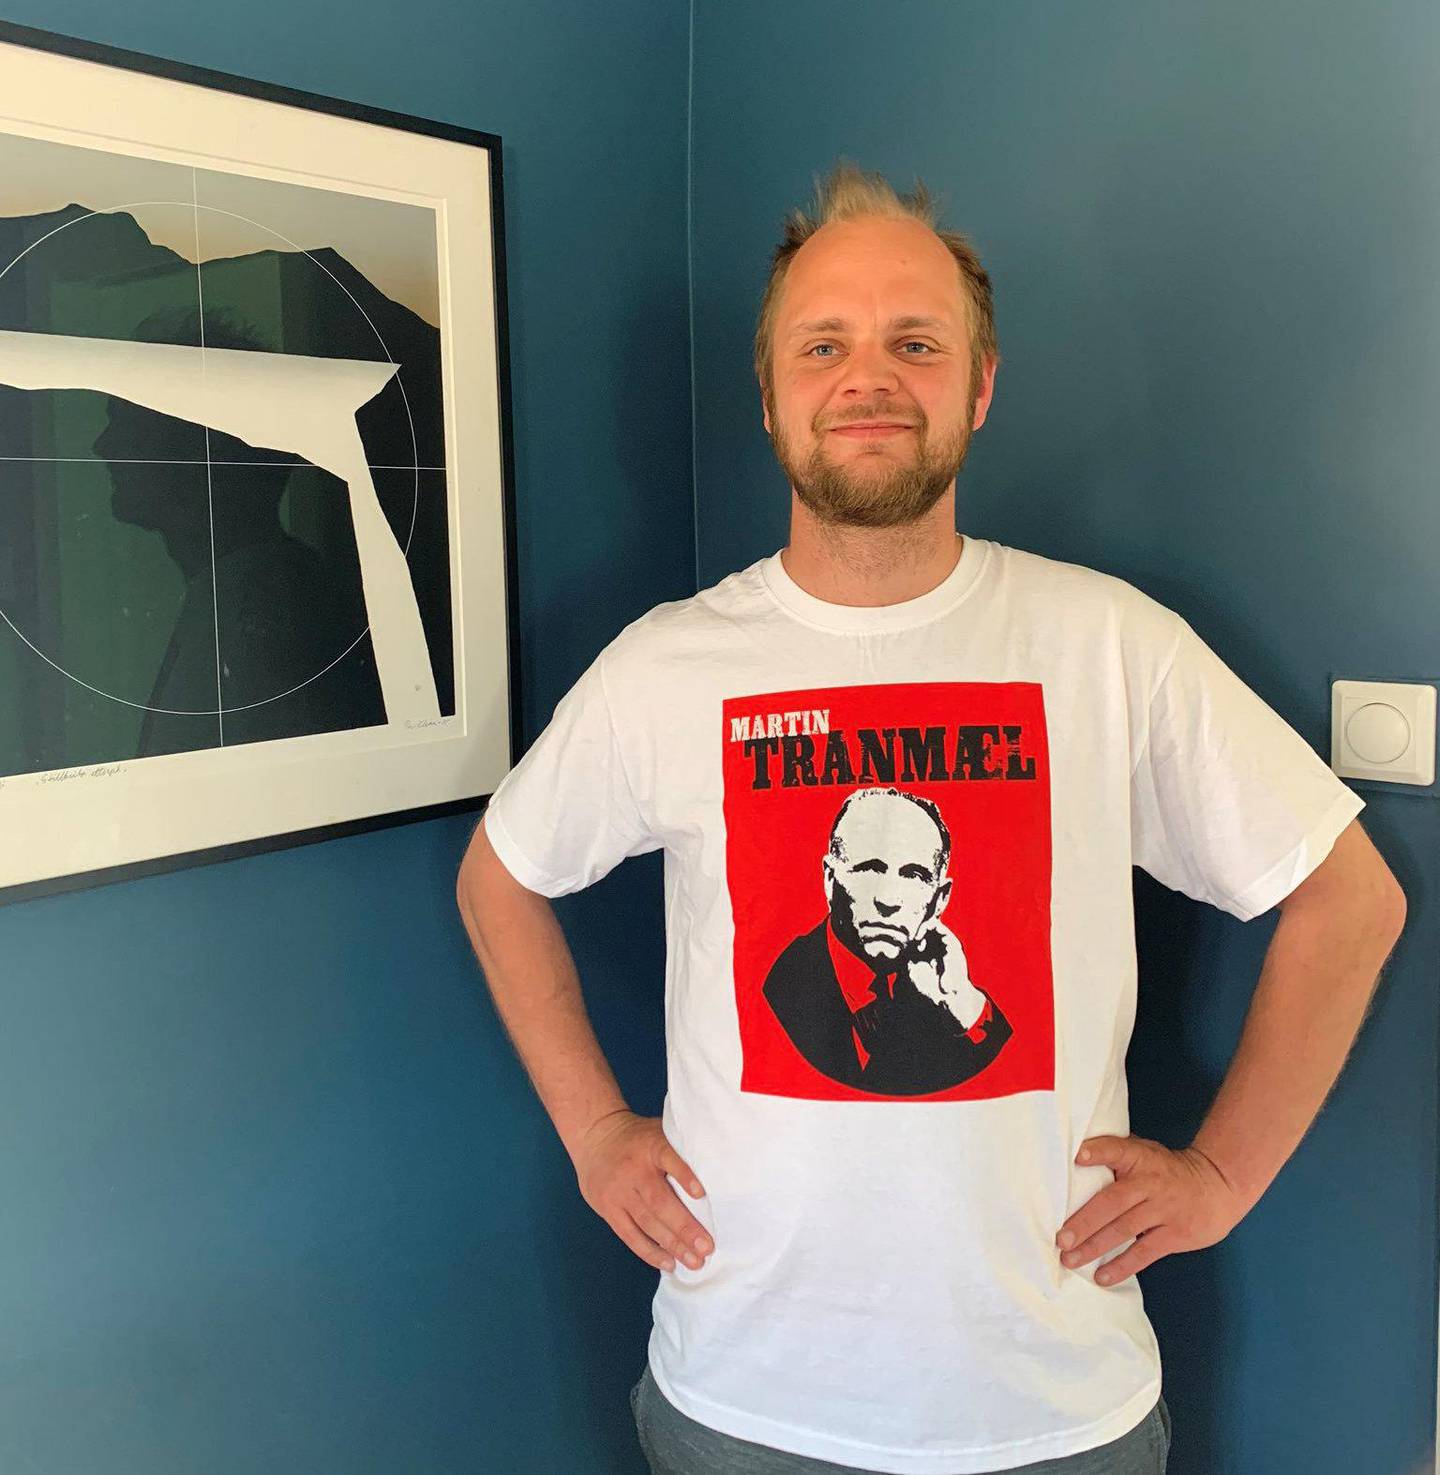 Martin Tranmæl er ett av de virkelig store navnene i norsk politisk historie. Mimir Kristjansson har skrevet boka «Tranmæls metode», om hvordan venstresida på 2020-tallet kan lære av venstresida på 1930-tallet. 	Foto: privat